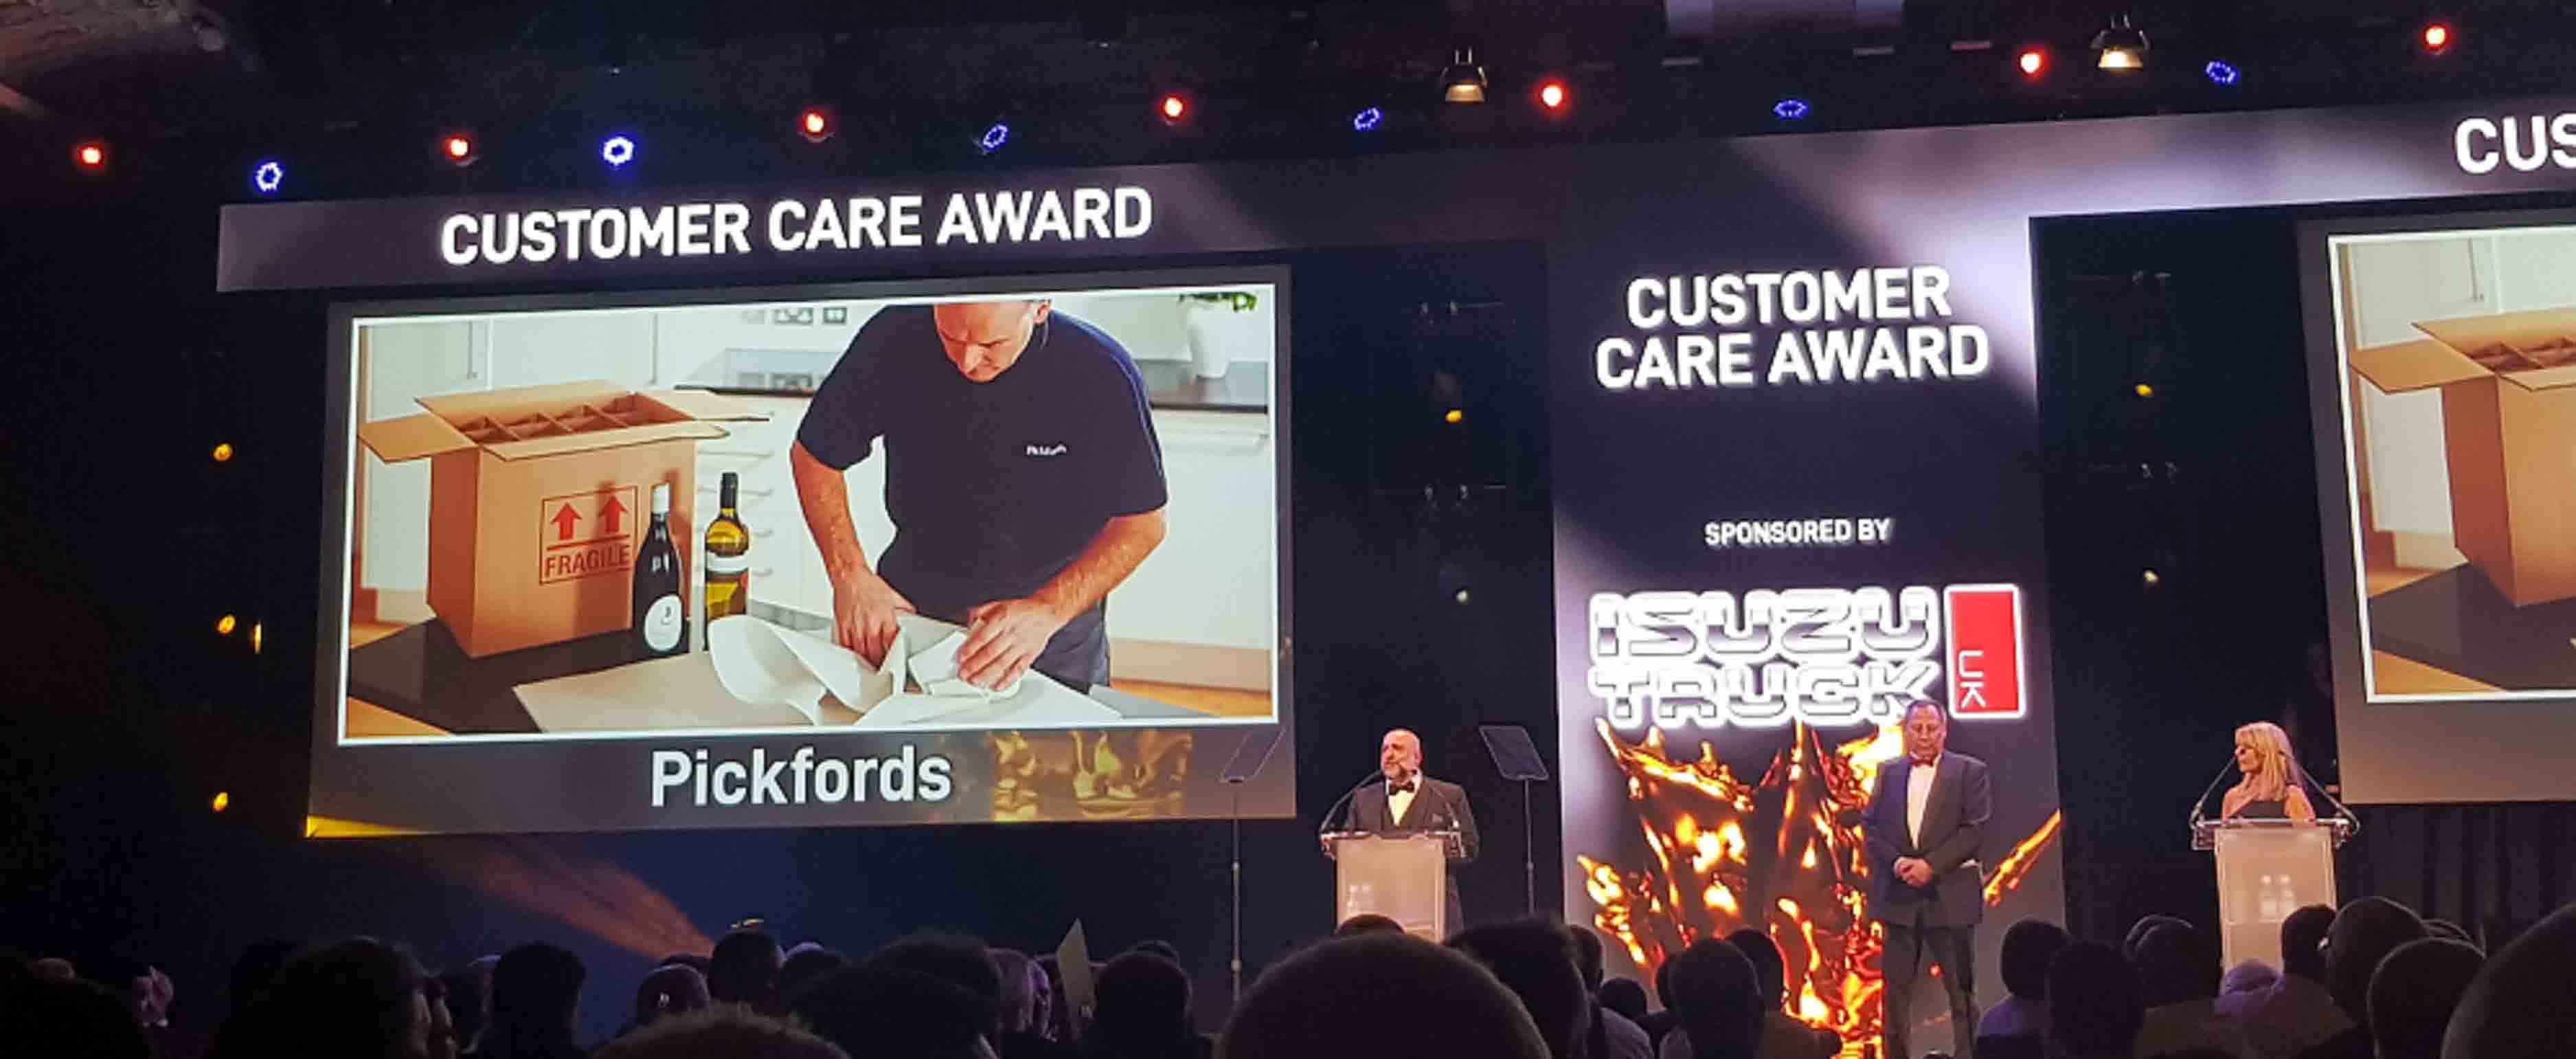 Customer Care Award 